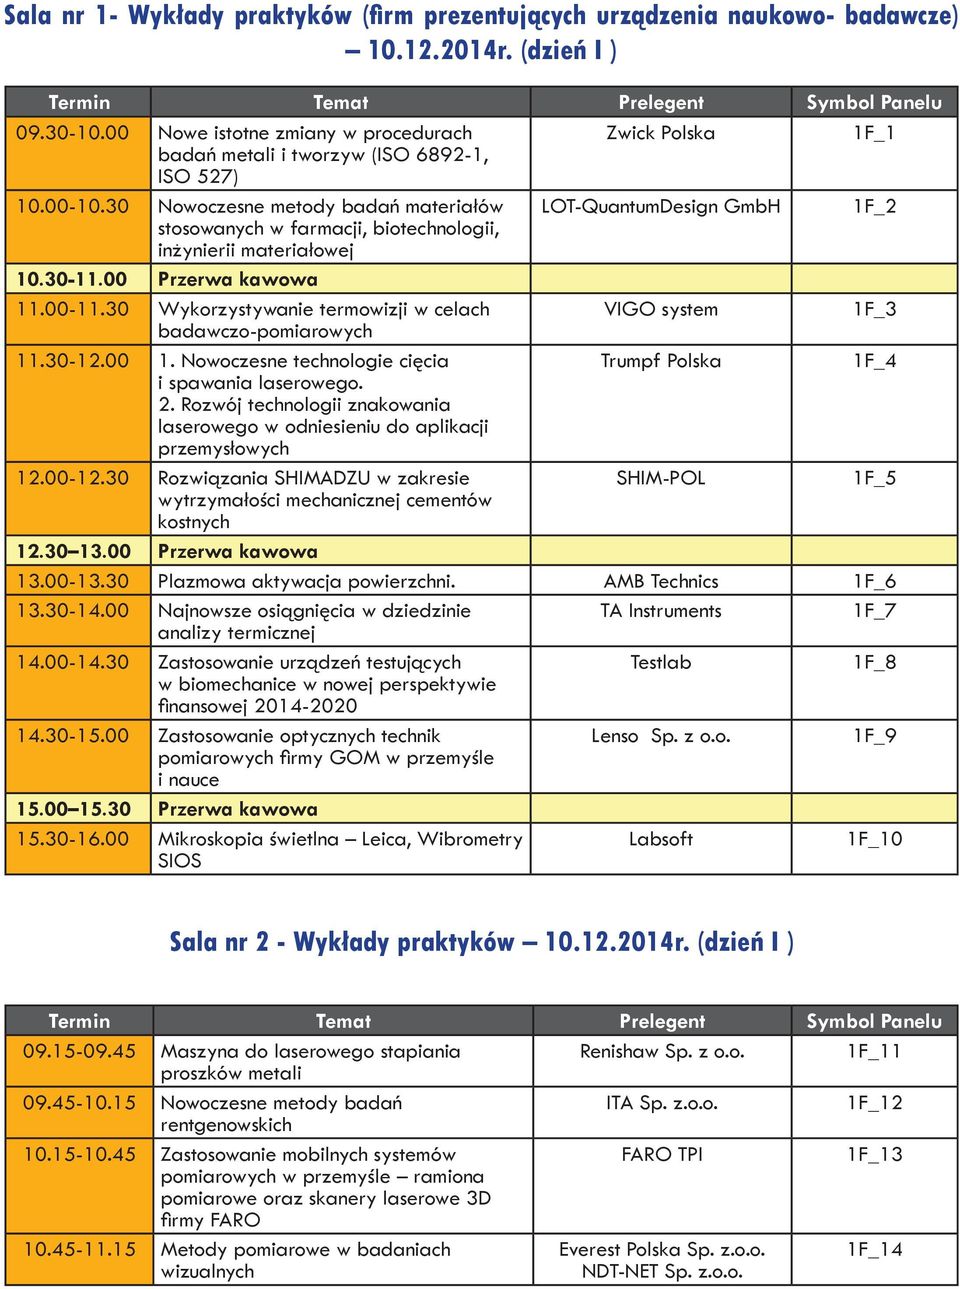 30 Nowoczesne metody badań materiałów LOT-QuantumDesign GmbH 1F_2 stosowanych w farmacji, biotechnologii, inżynierii materiałowej 10.30-11.00 Przerwa kawowa 11.00-11.